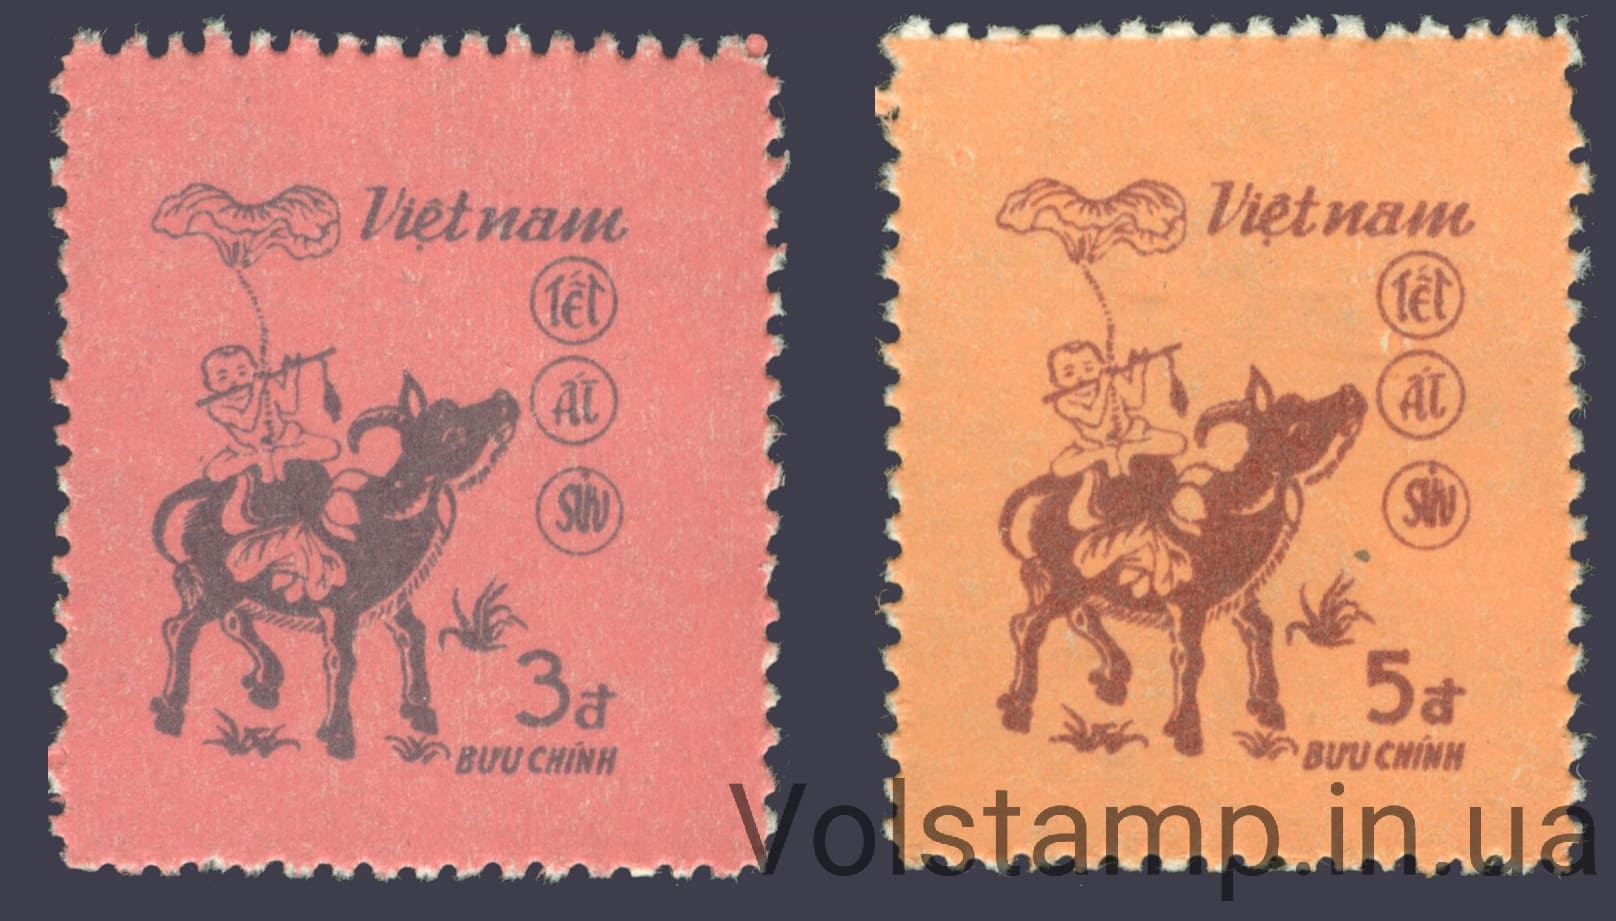 1985 Вьетнам серия марок Китайский Новый год 1985 - Год OX MNH №1544-1545